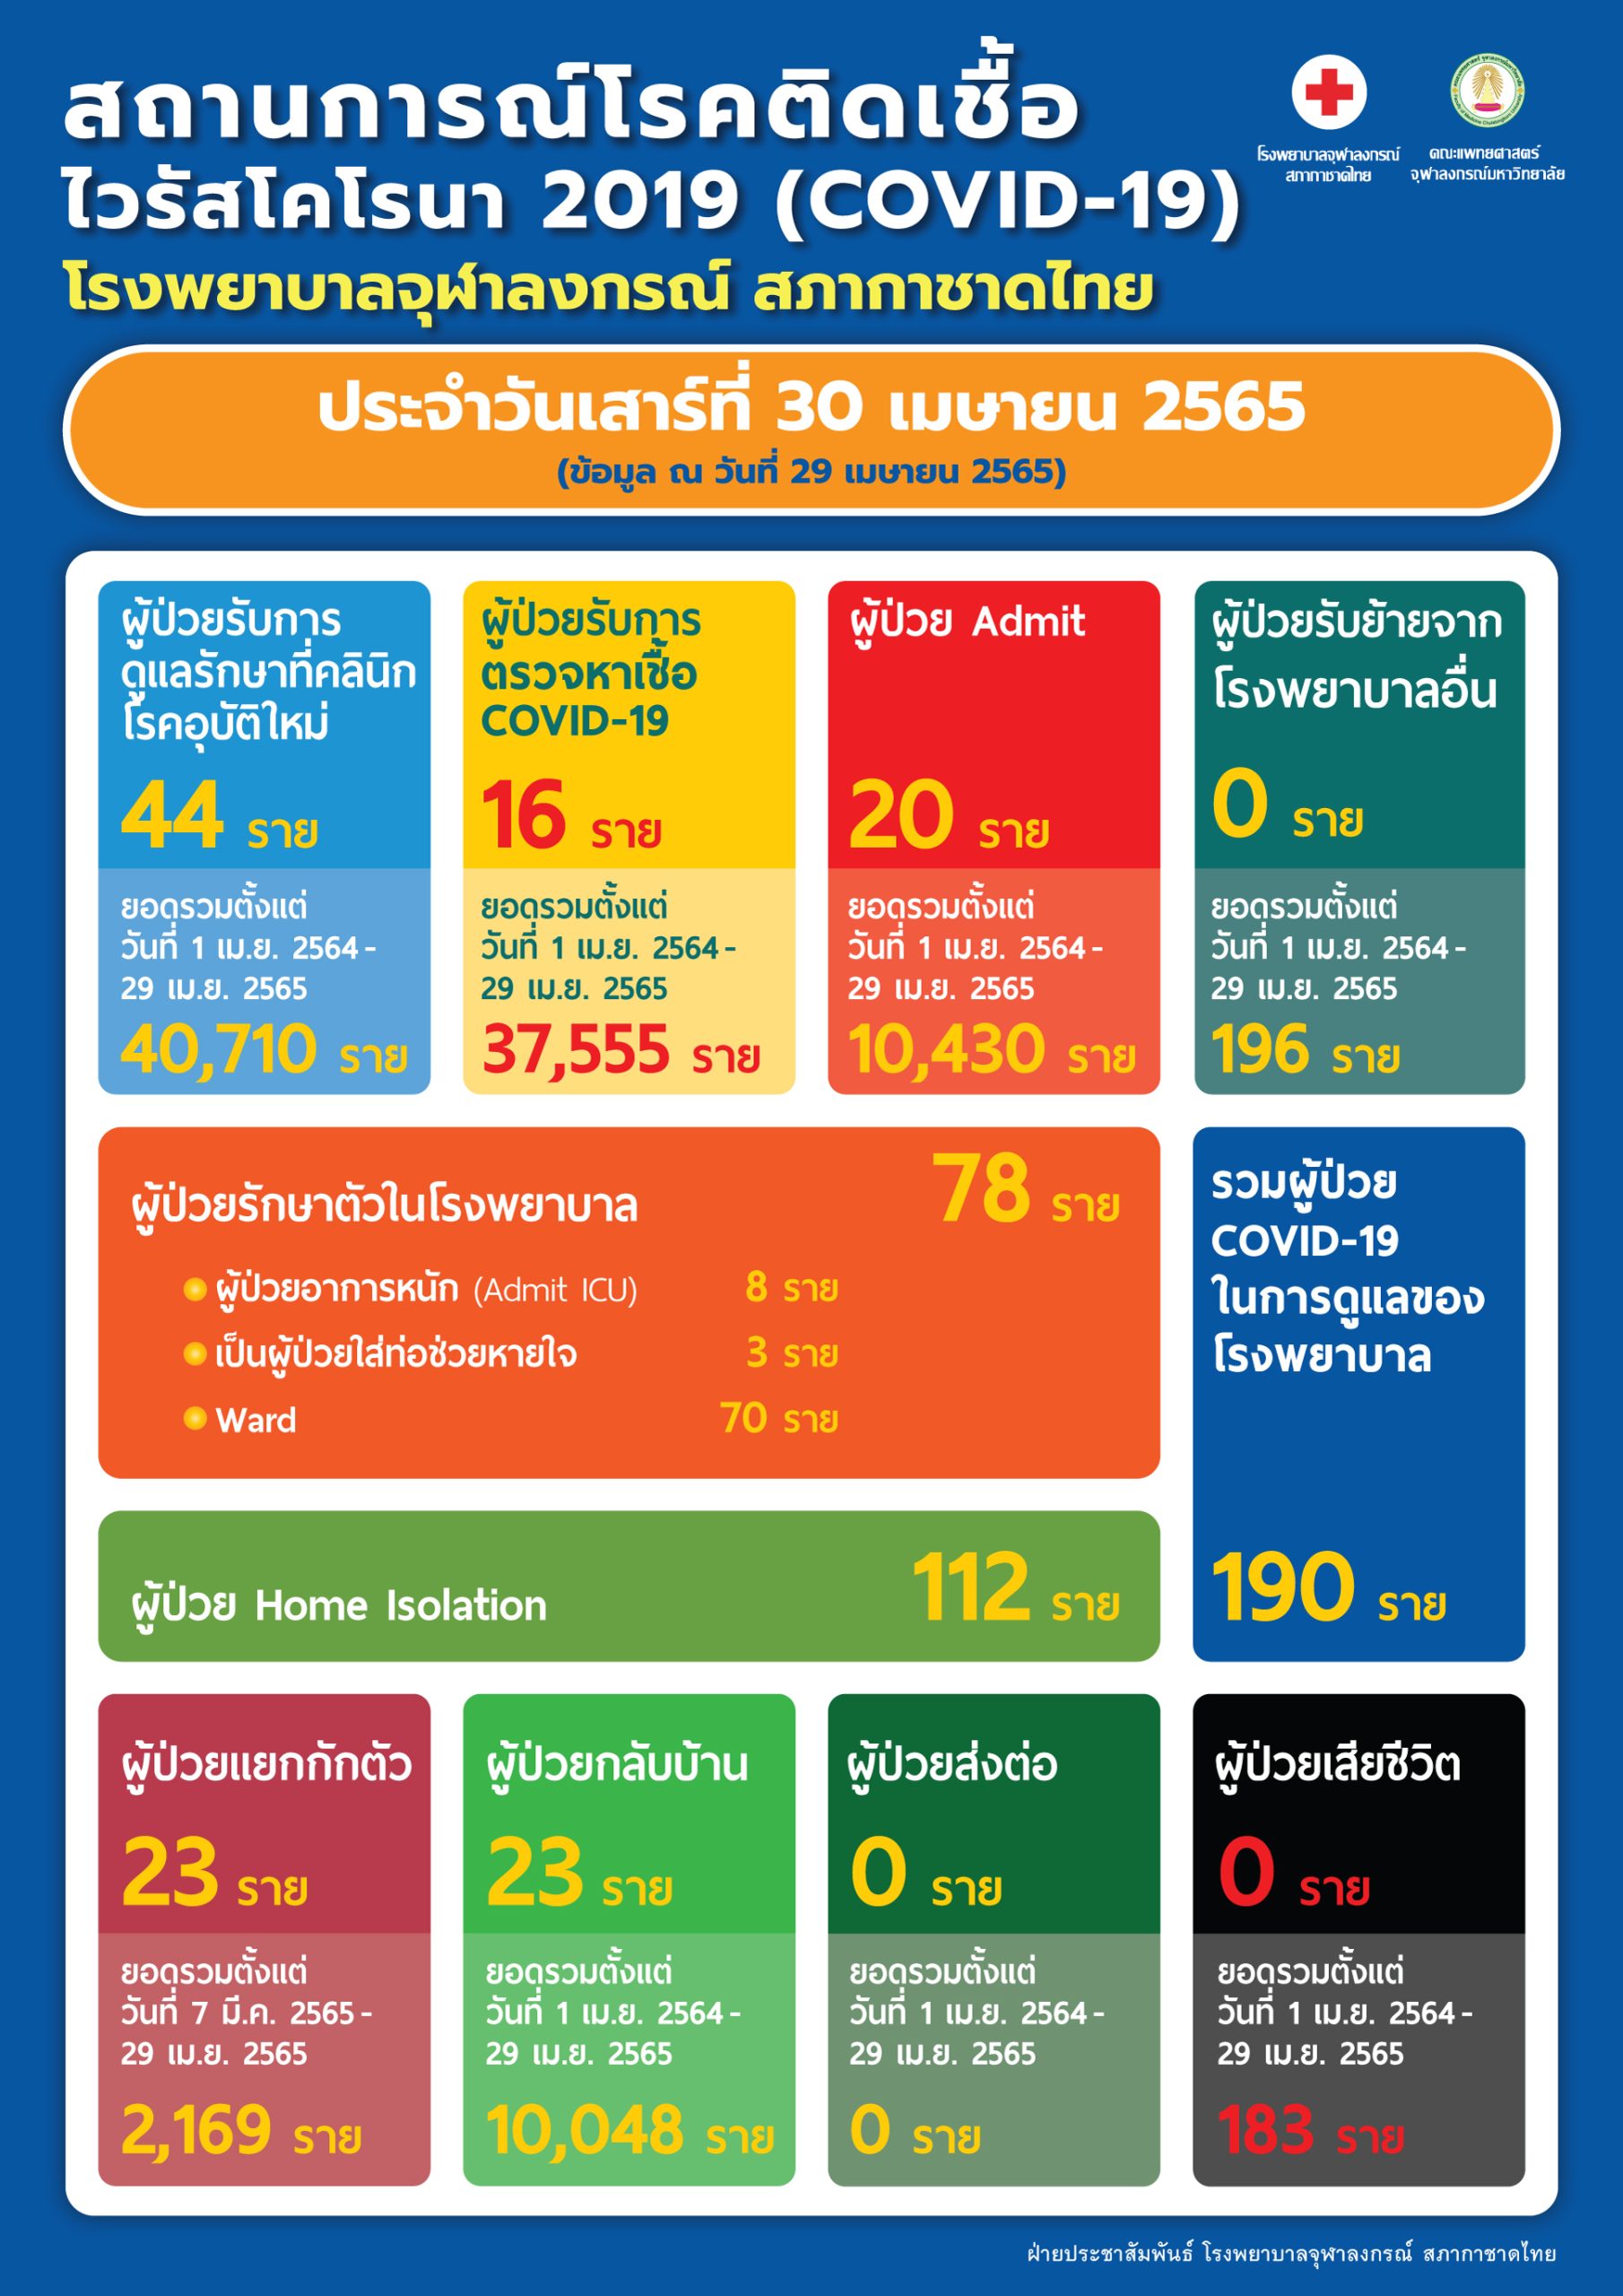 สถานการณ์โรคติดเชื้อ ไวรัสโคโรนา 2019 (COVID-19) โรงพยาบาลจุฬาลงกรณ์ สภากาชาดไทย ประจำวันเสาร์ที่ 30 เมษายน 2565